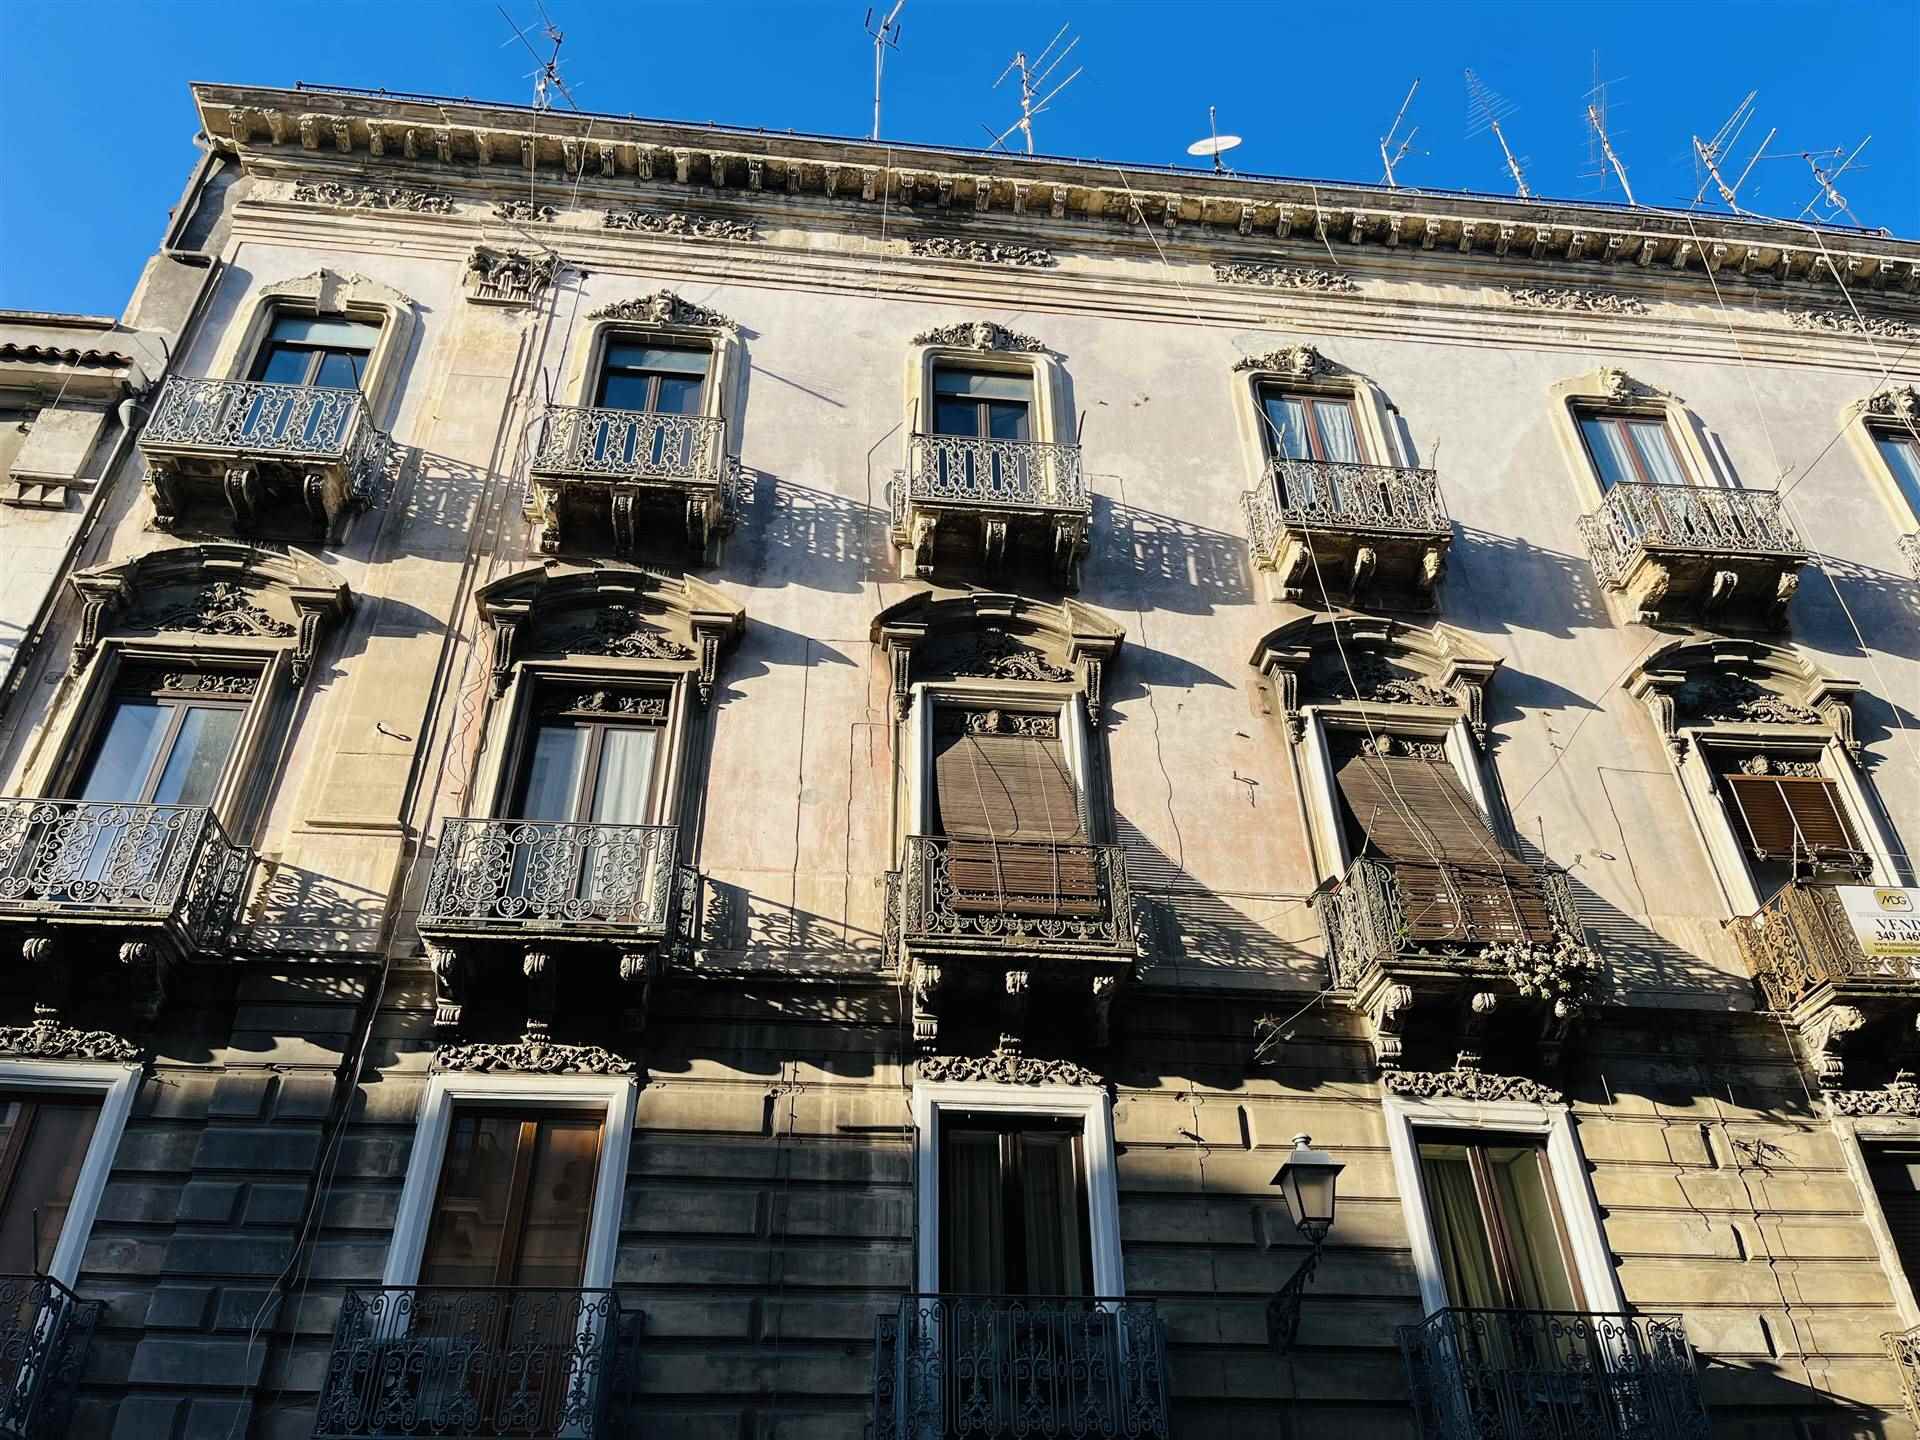 Trilocale ristrutturato in zona Piazza Duomo a Catania